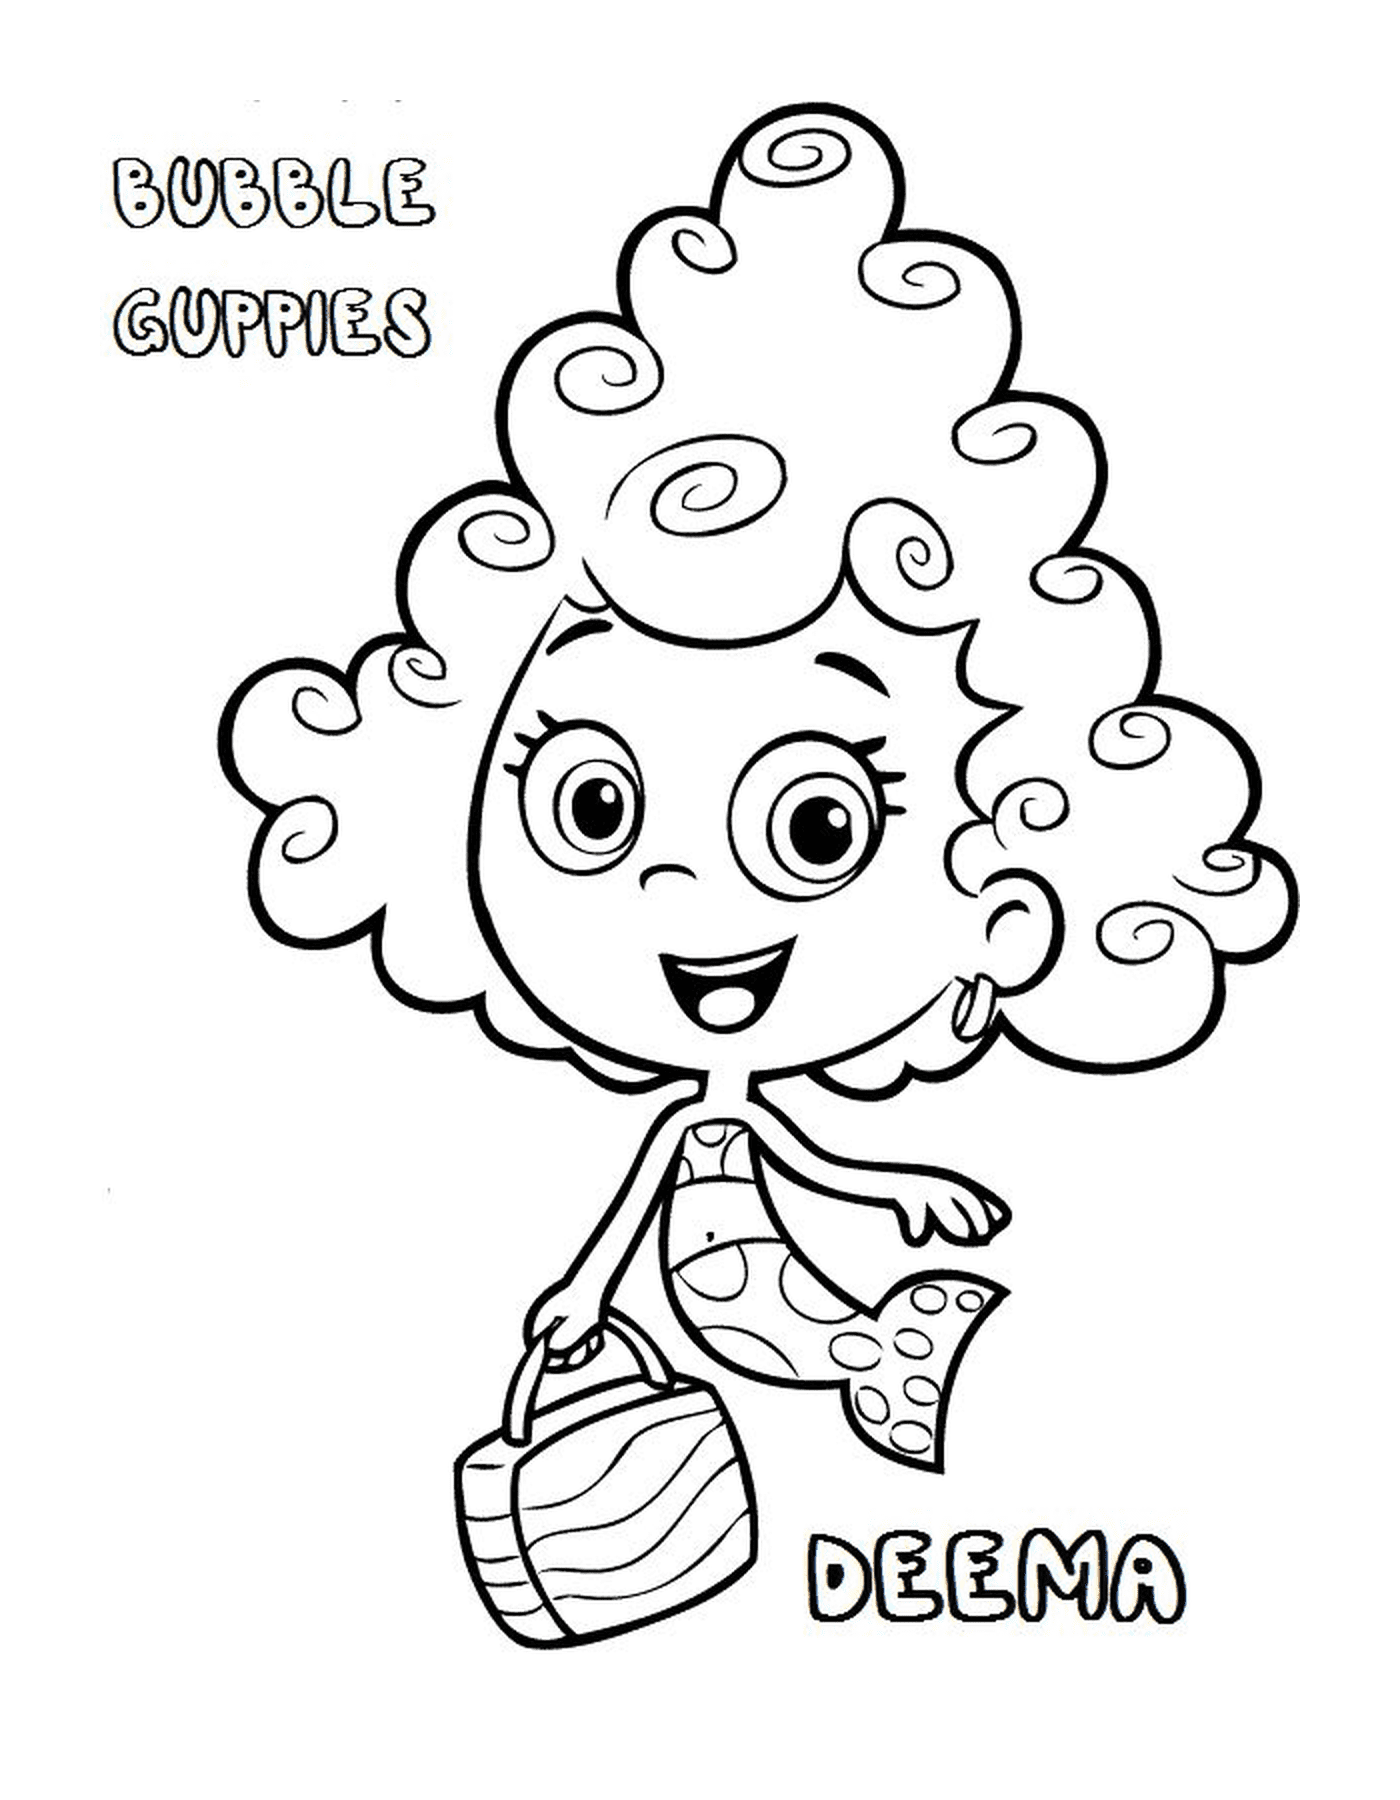  Deema de los Bubble Guppies, una chica con el pelo rizado 